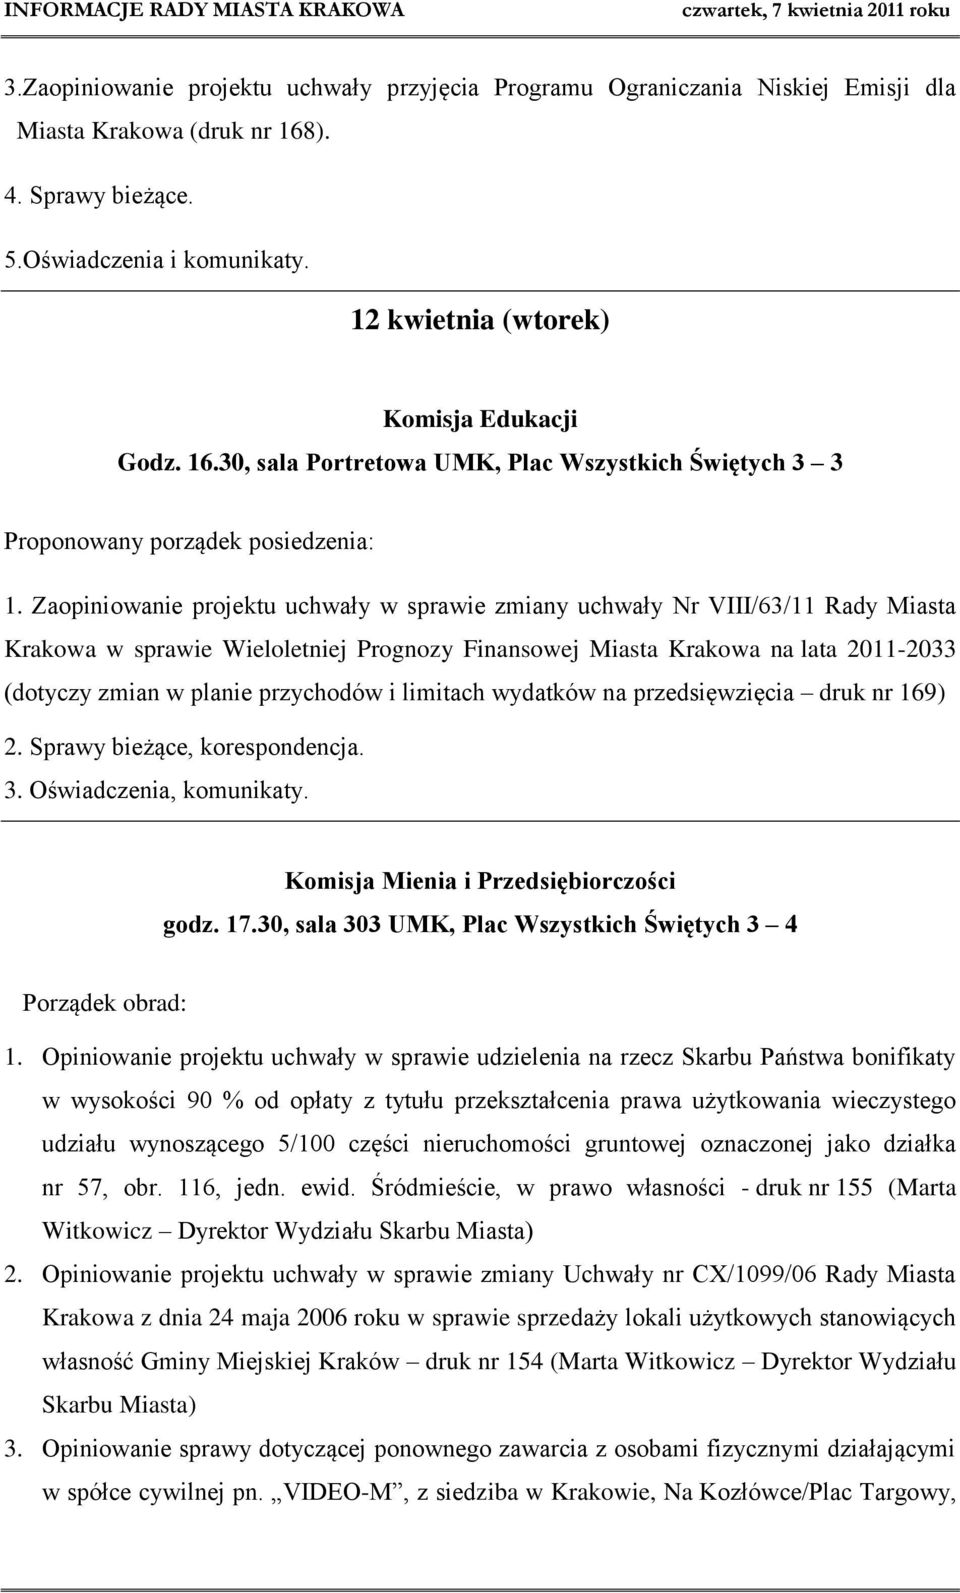 Zaopiniowanie projektu uchwały w sprawie zmiany uchwały Nr VIII/63/11 Rady Miasta Krakowa w sprawie Wieloletniej Prognozy Finansowej Miasta Krakowa na lata 2011-2033 (dotyczy zmian w planie